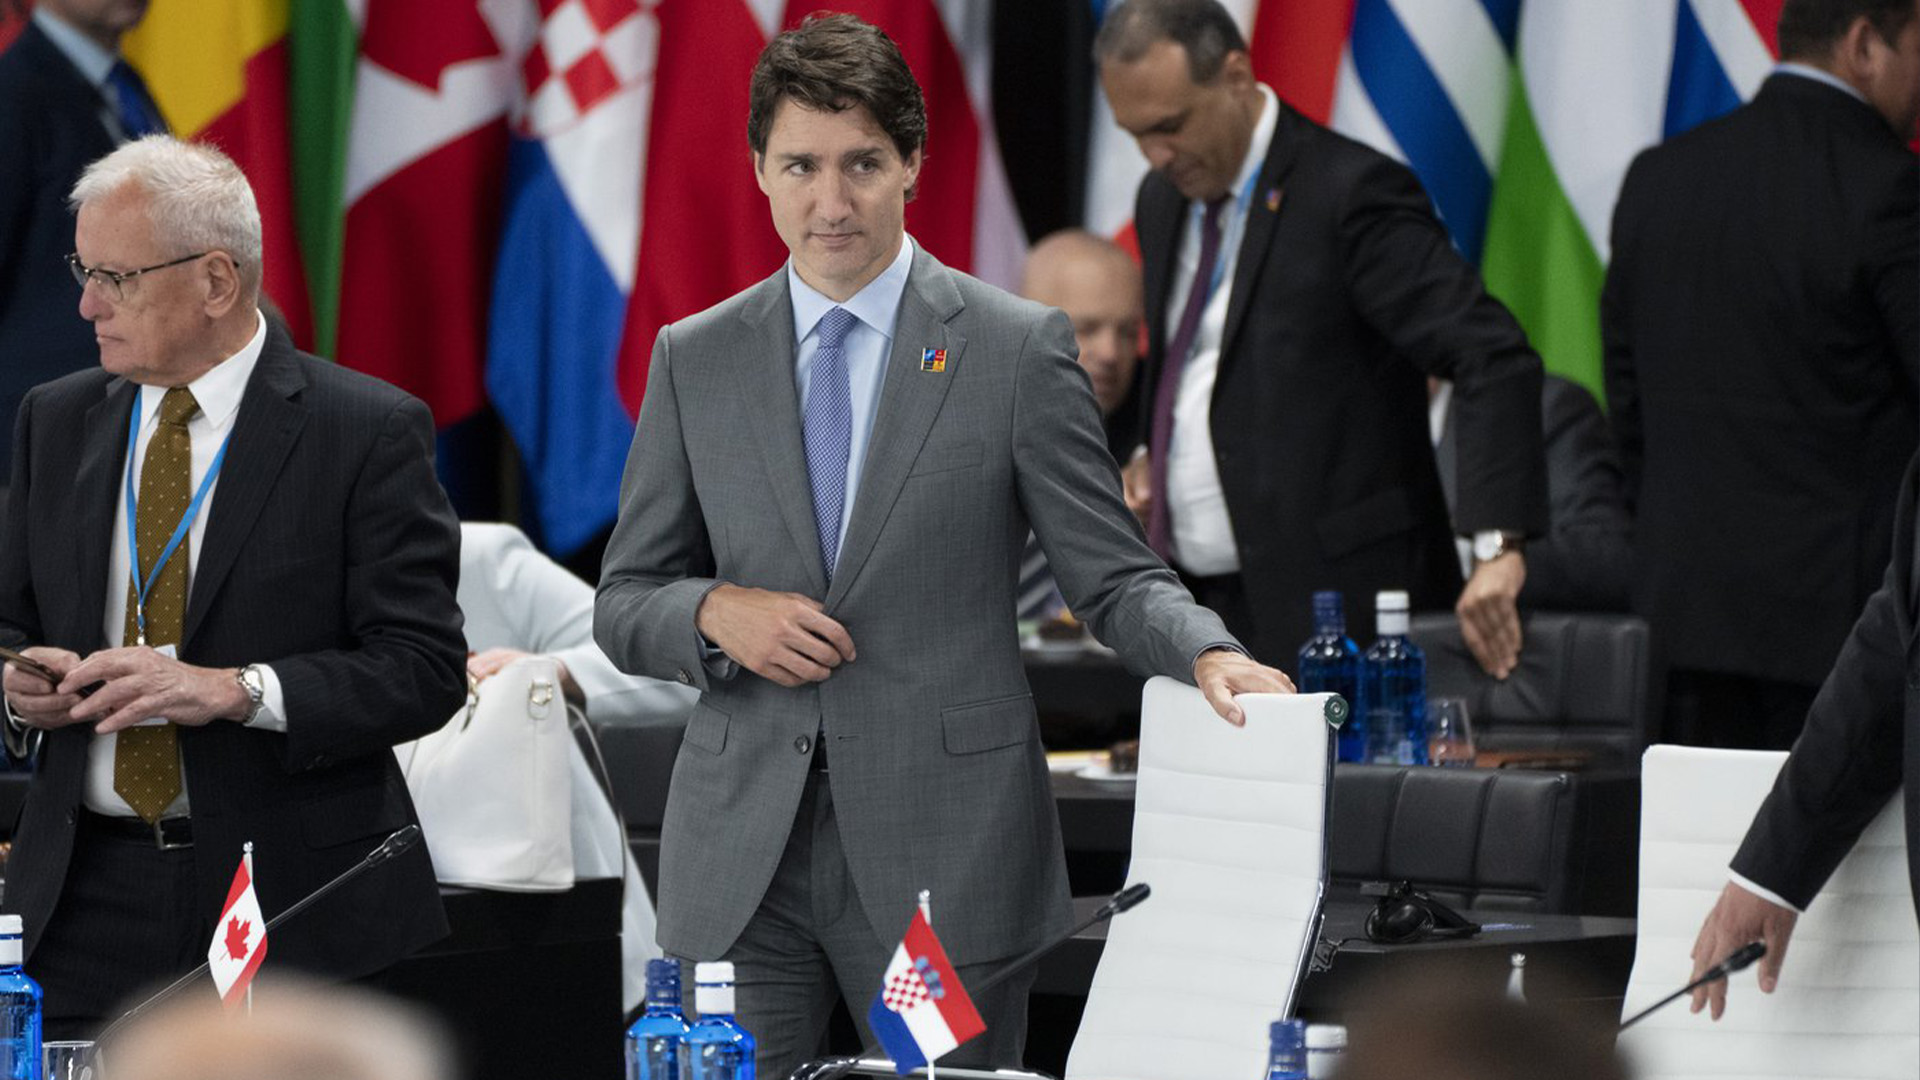 Le premier ministre Justin Trudeau a conclu vendredi sa rencontre avec les dirigeants des pays de l'OTAN à Madrid en annonçant une aide militaire supplémentaire du Canada à l'Ukraine.